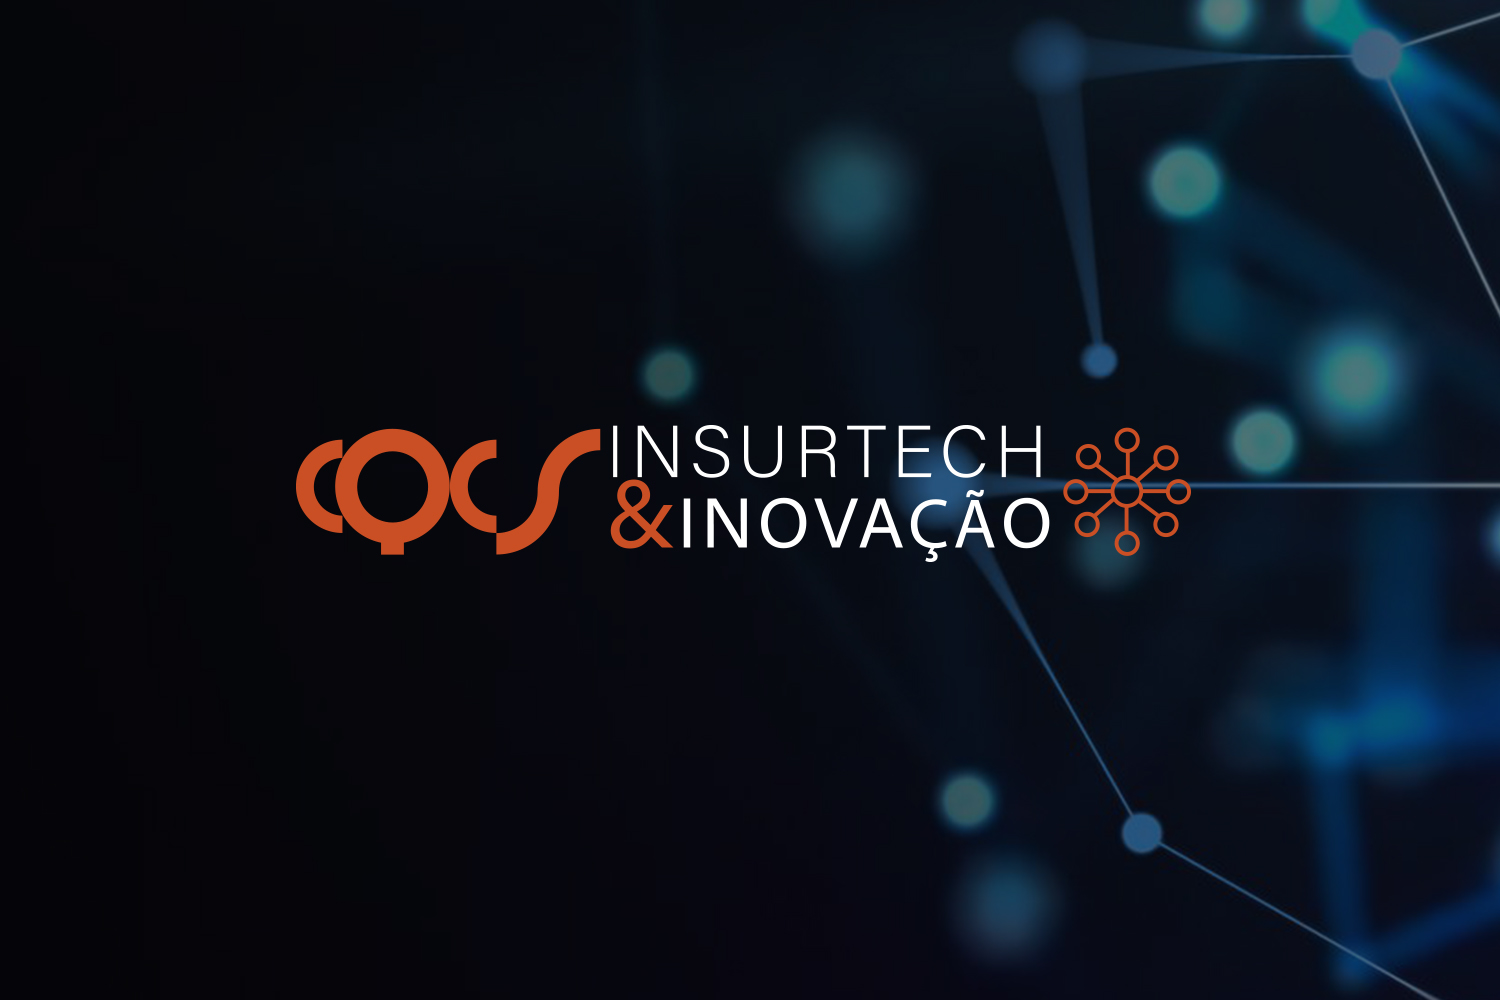 CEO da Kakau Seguros participa de painel sobre Insurtechs no CQCS Insurtech & Inovação